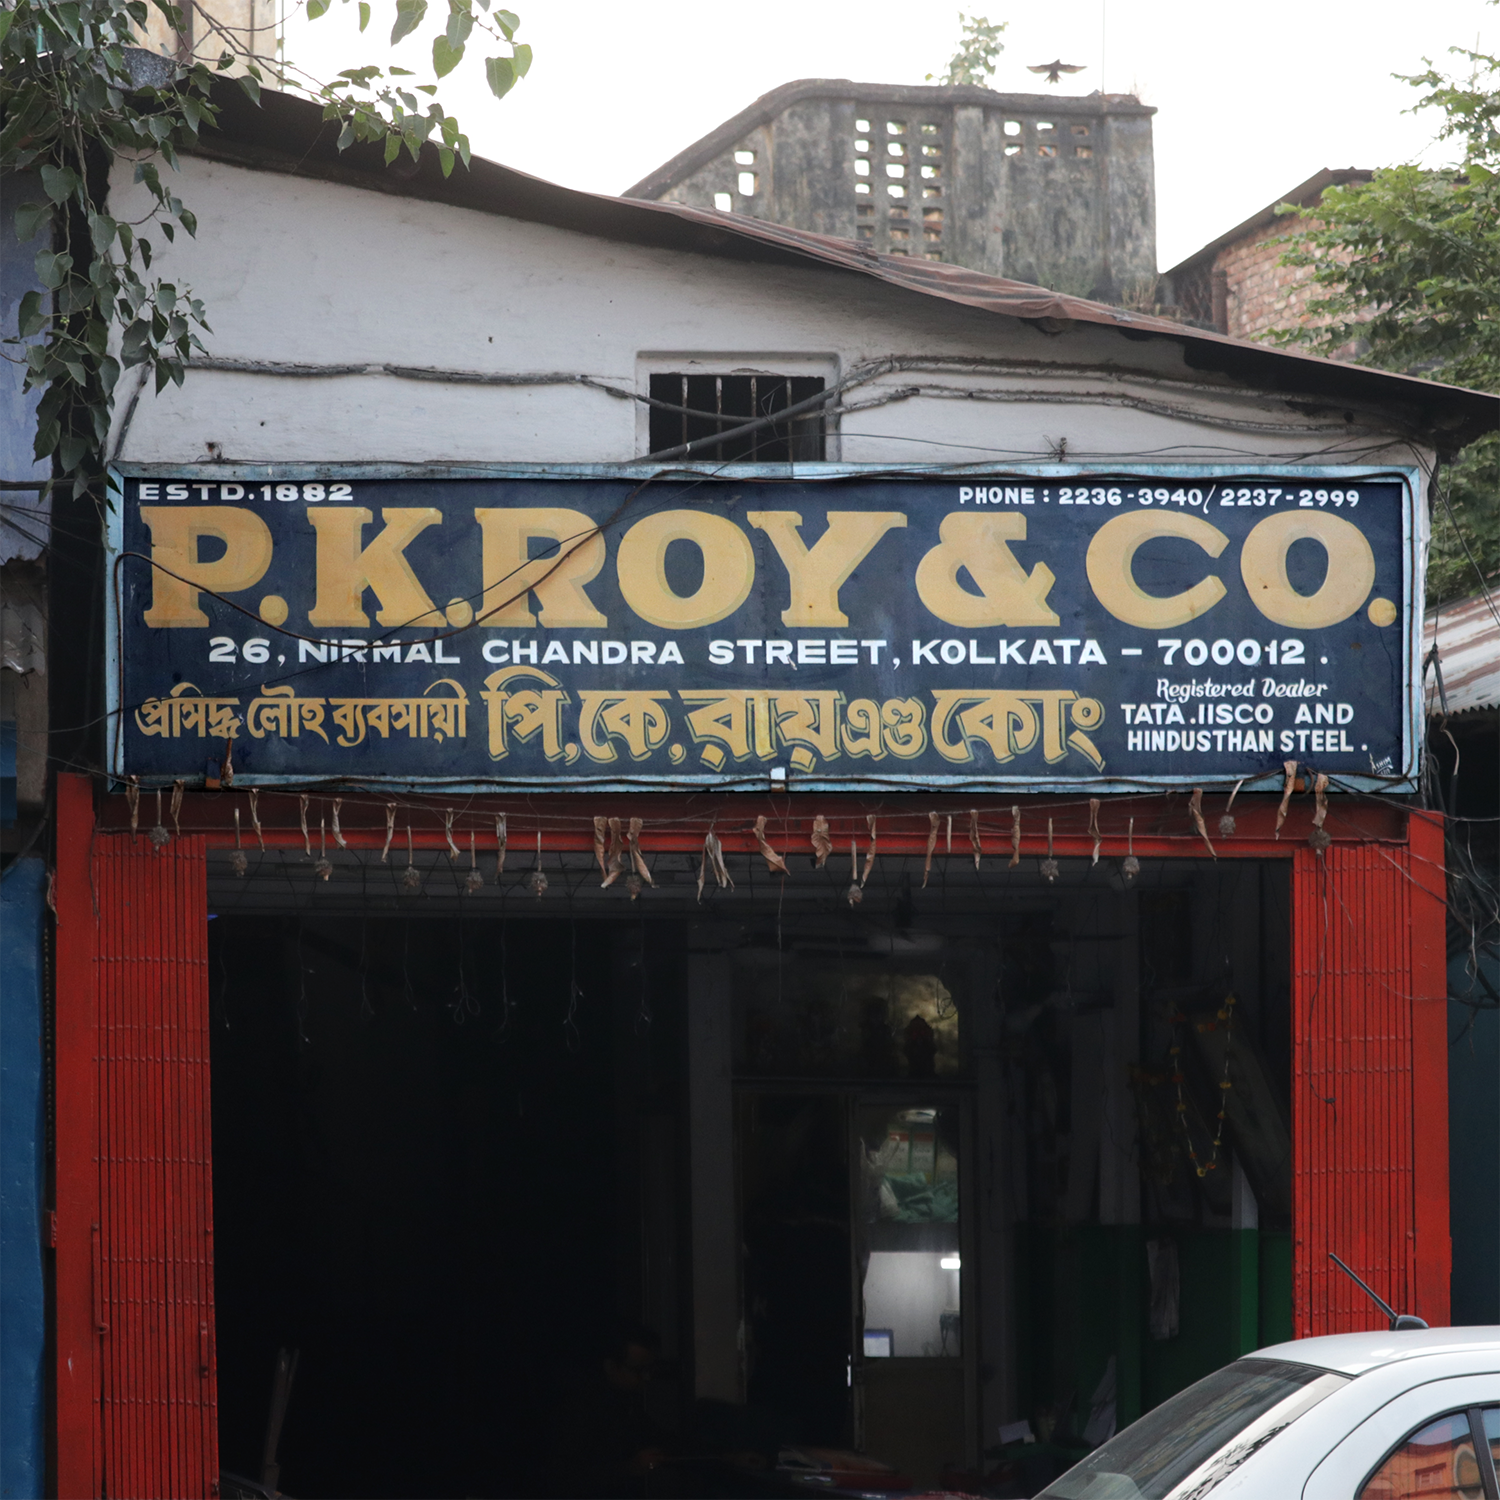 P. K. Roy & Co.